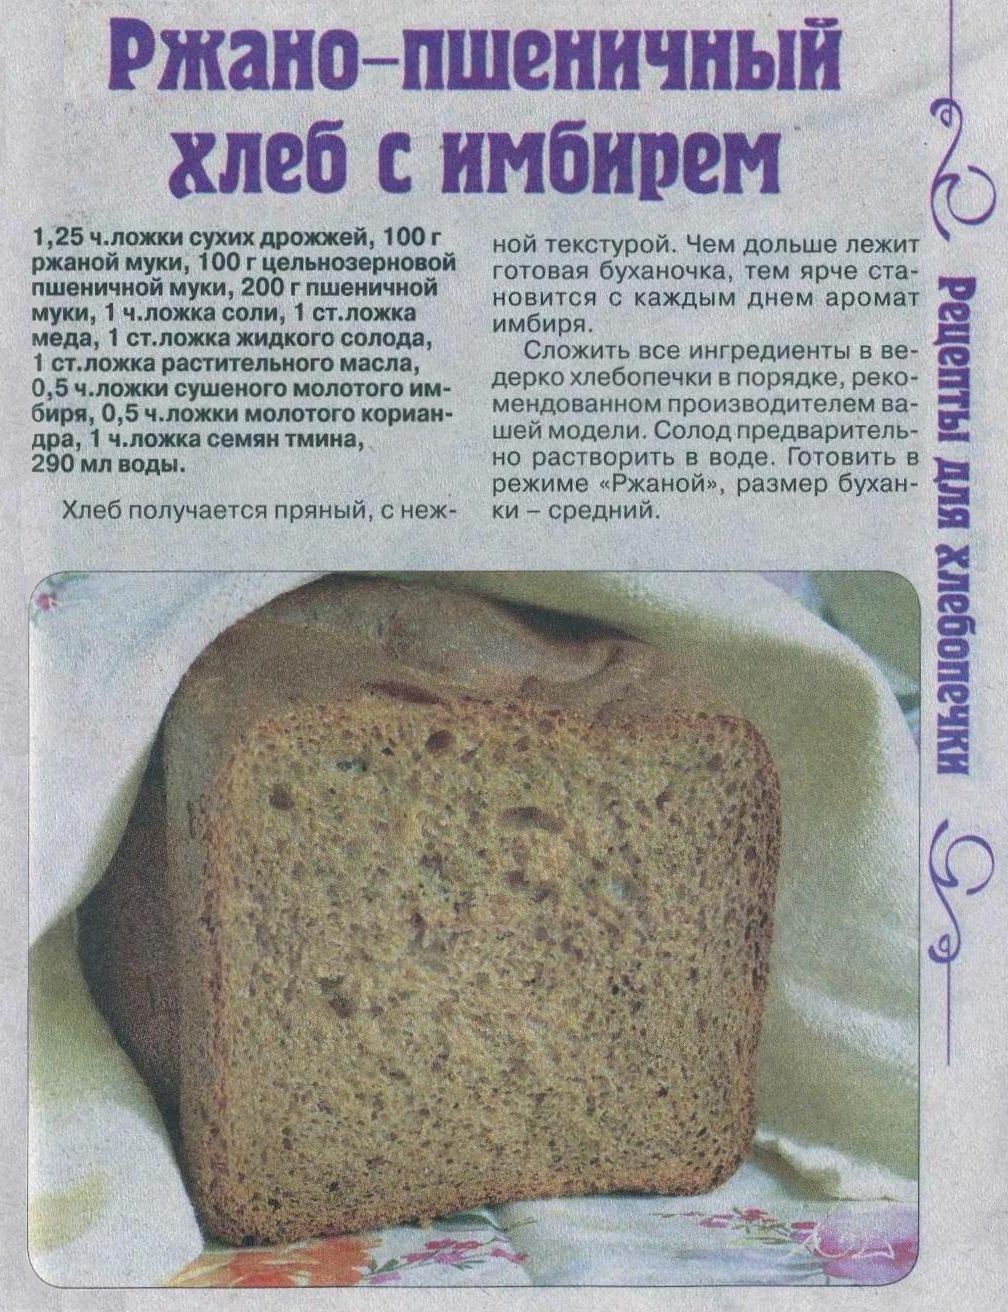 Рецепт теста для булочек в хлебопечке. Рецепт хлеба в хлебопечке. Тесто на хлеб в хлебопечке. Домашний хлеб в хлебопечке. Рецептура ржаного хлеба.